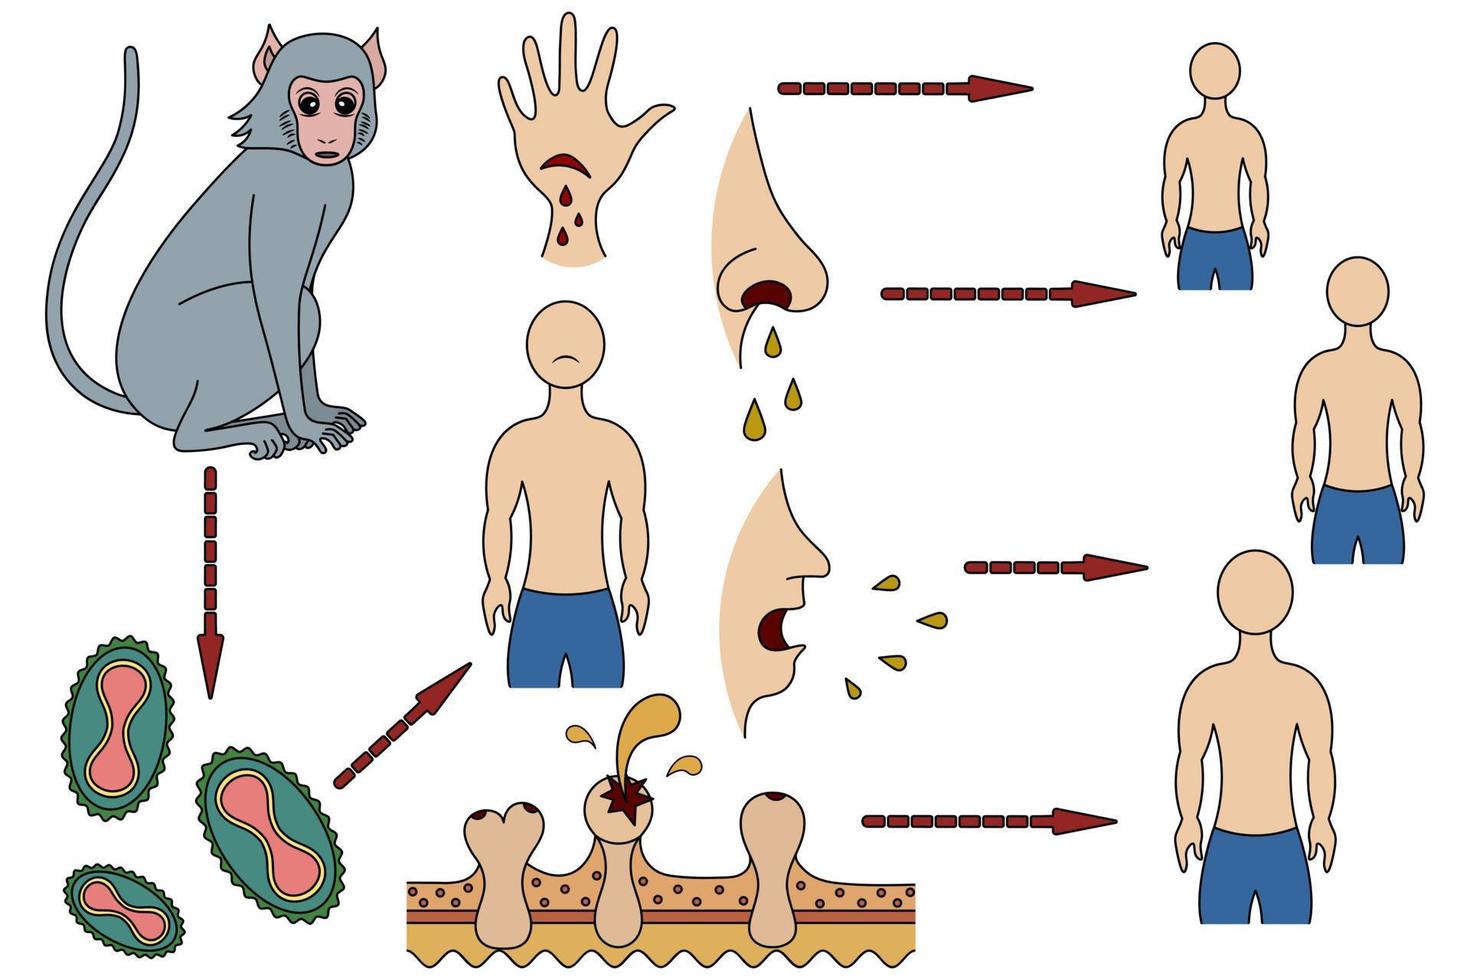 de besmettingsroute en het mechanisme van overdracht op mensen van het apenpokkenvirus in tekenfilmstijl. aap - virus - mens. vector